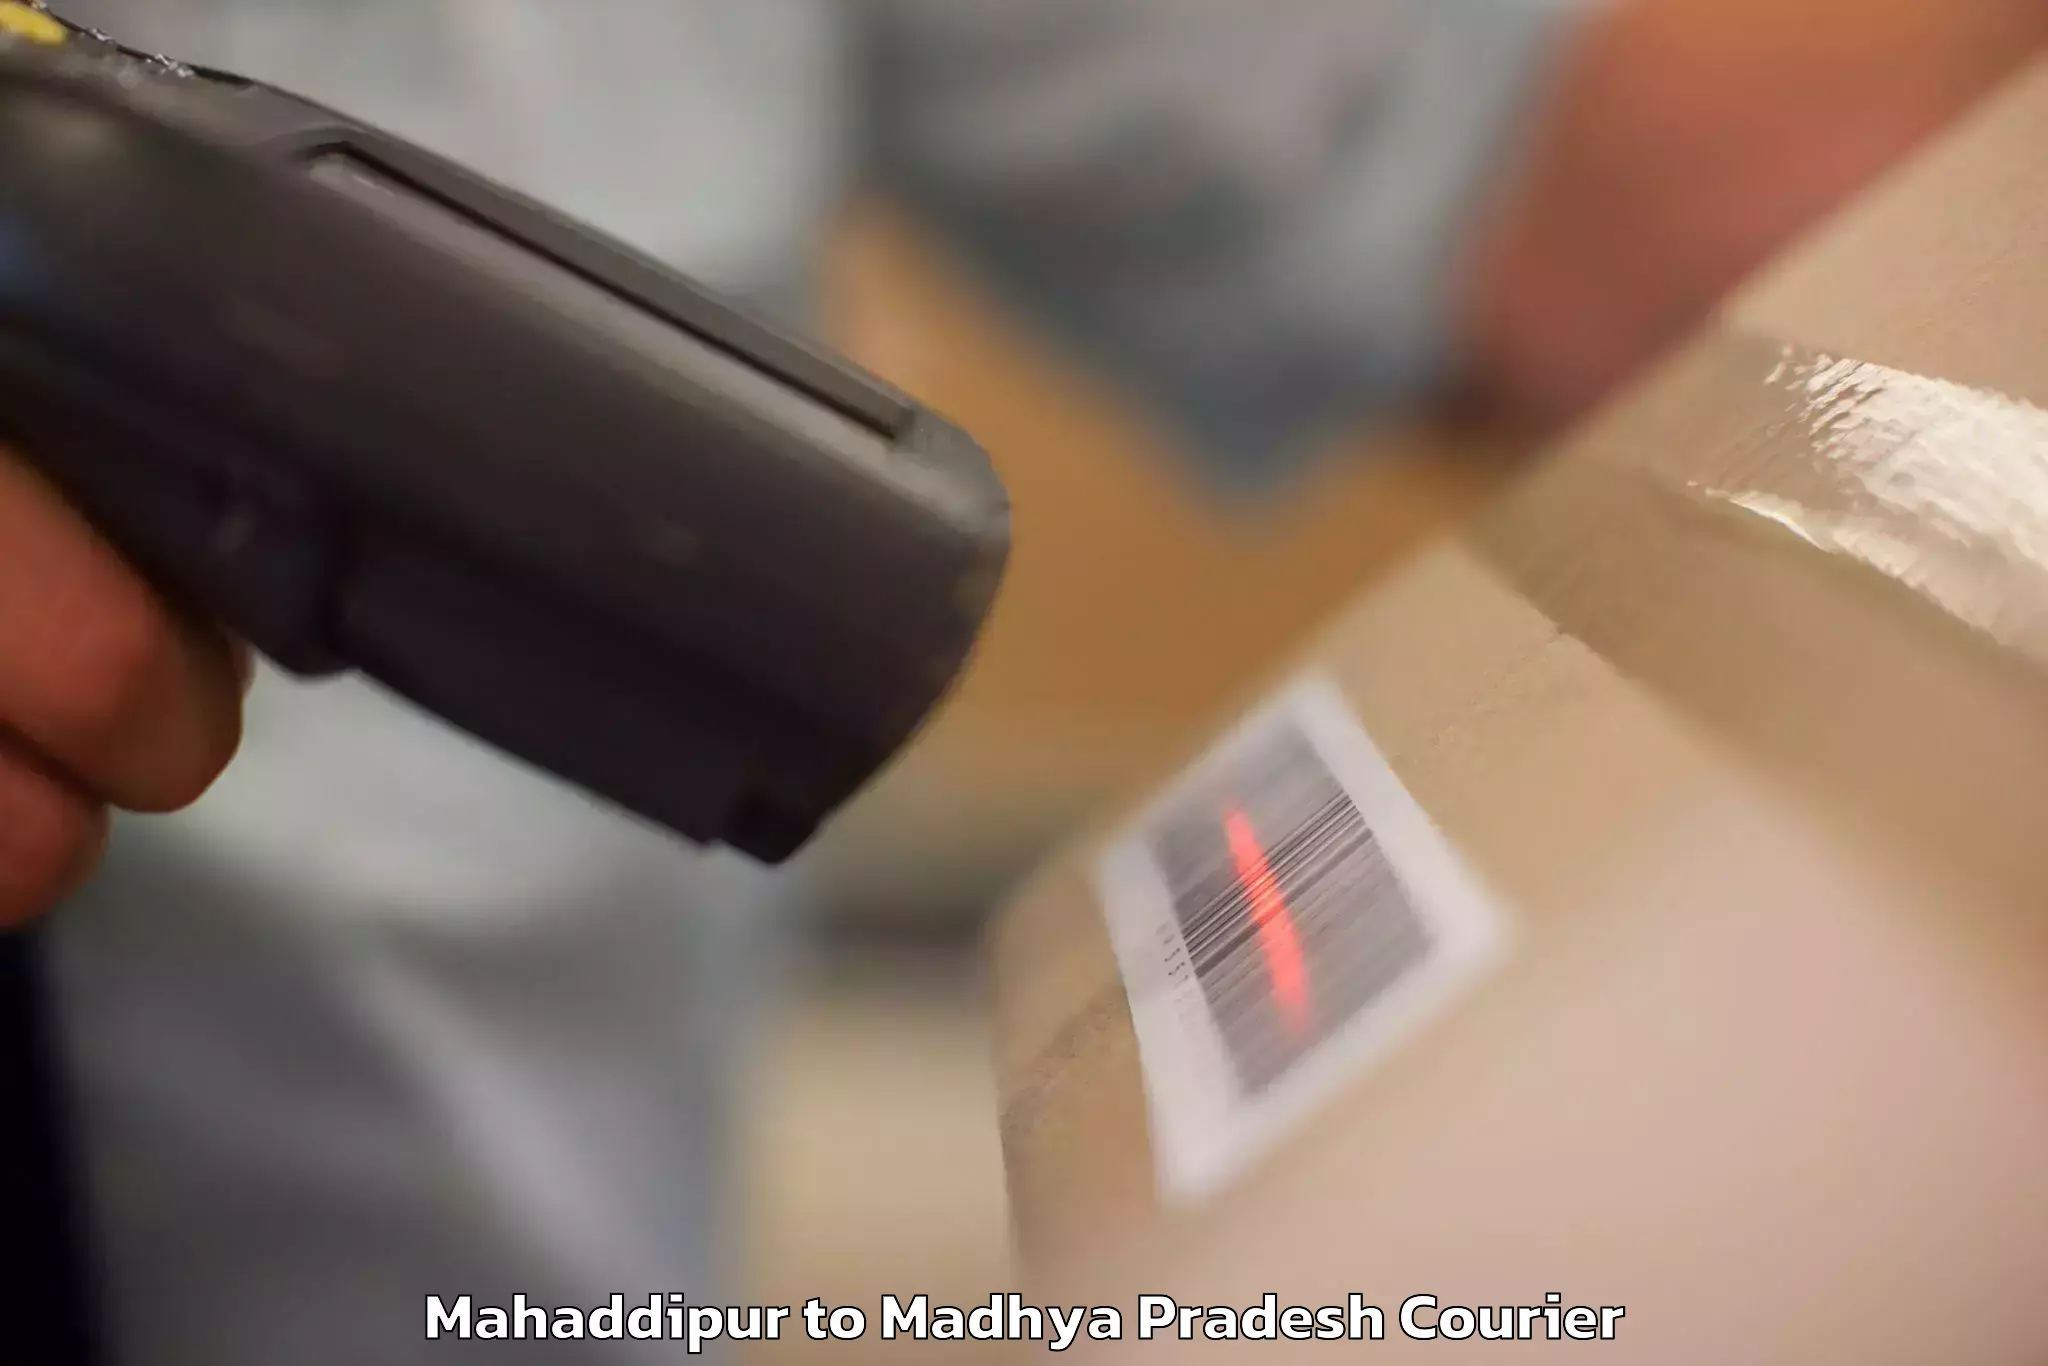 Baggage shipping rates calculator Mahaddipur to Bargawan